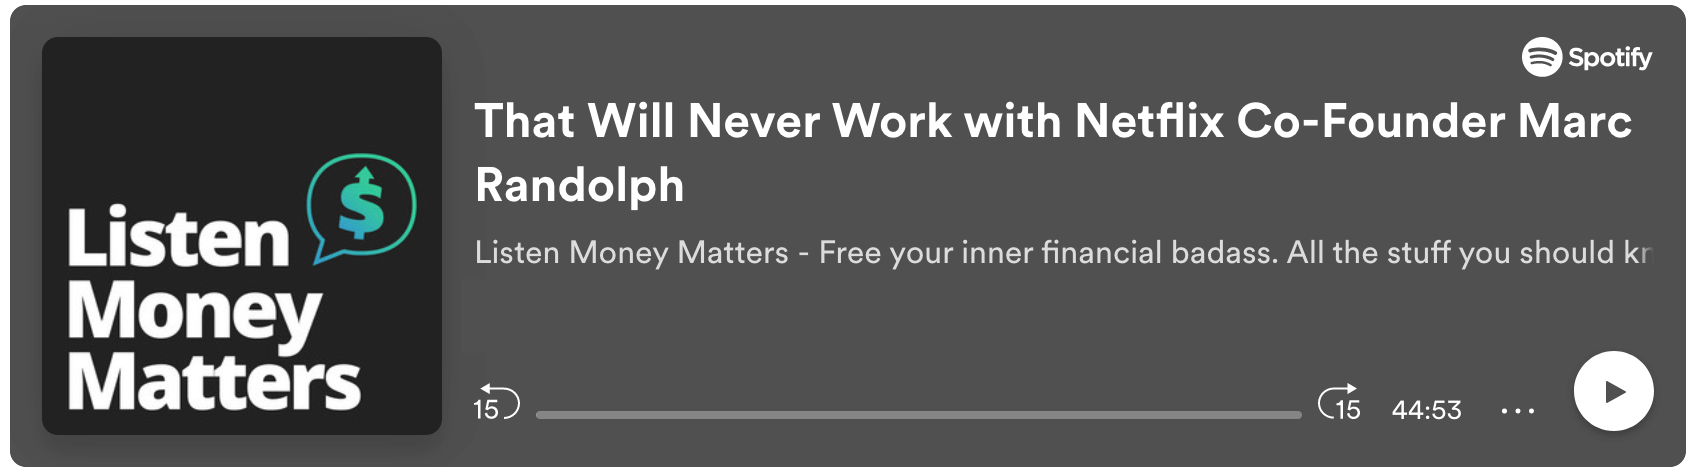 listen_money_matters